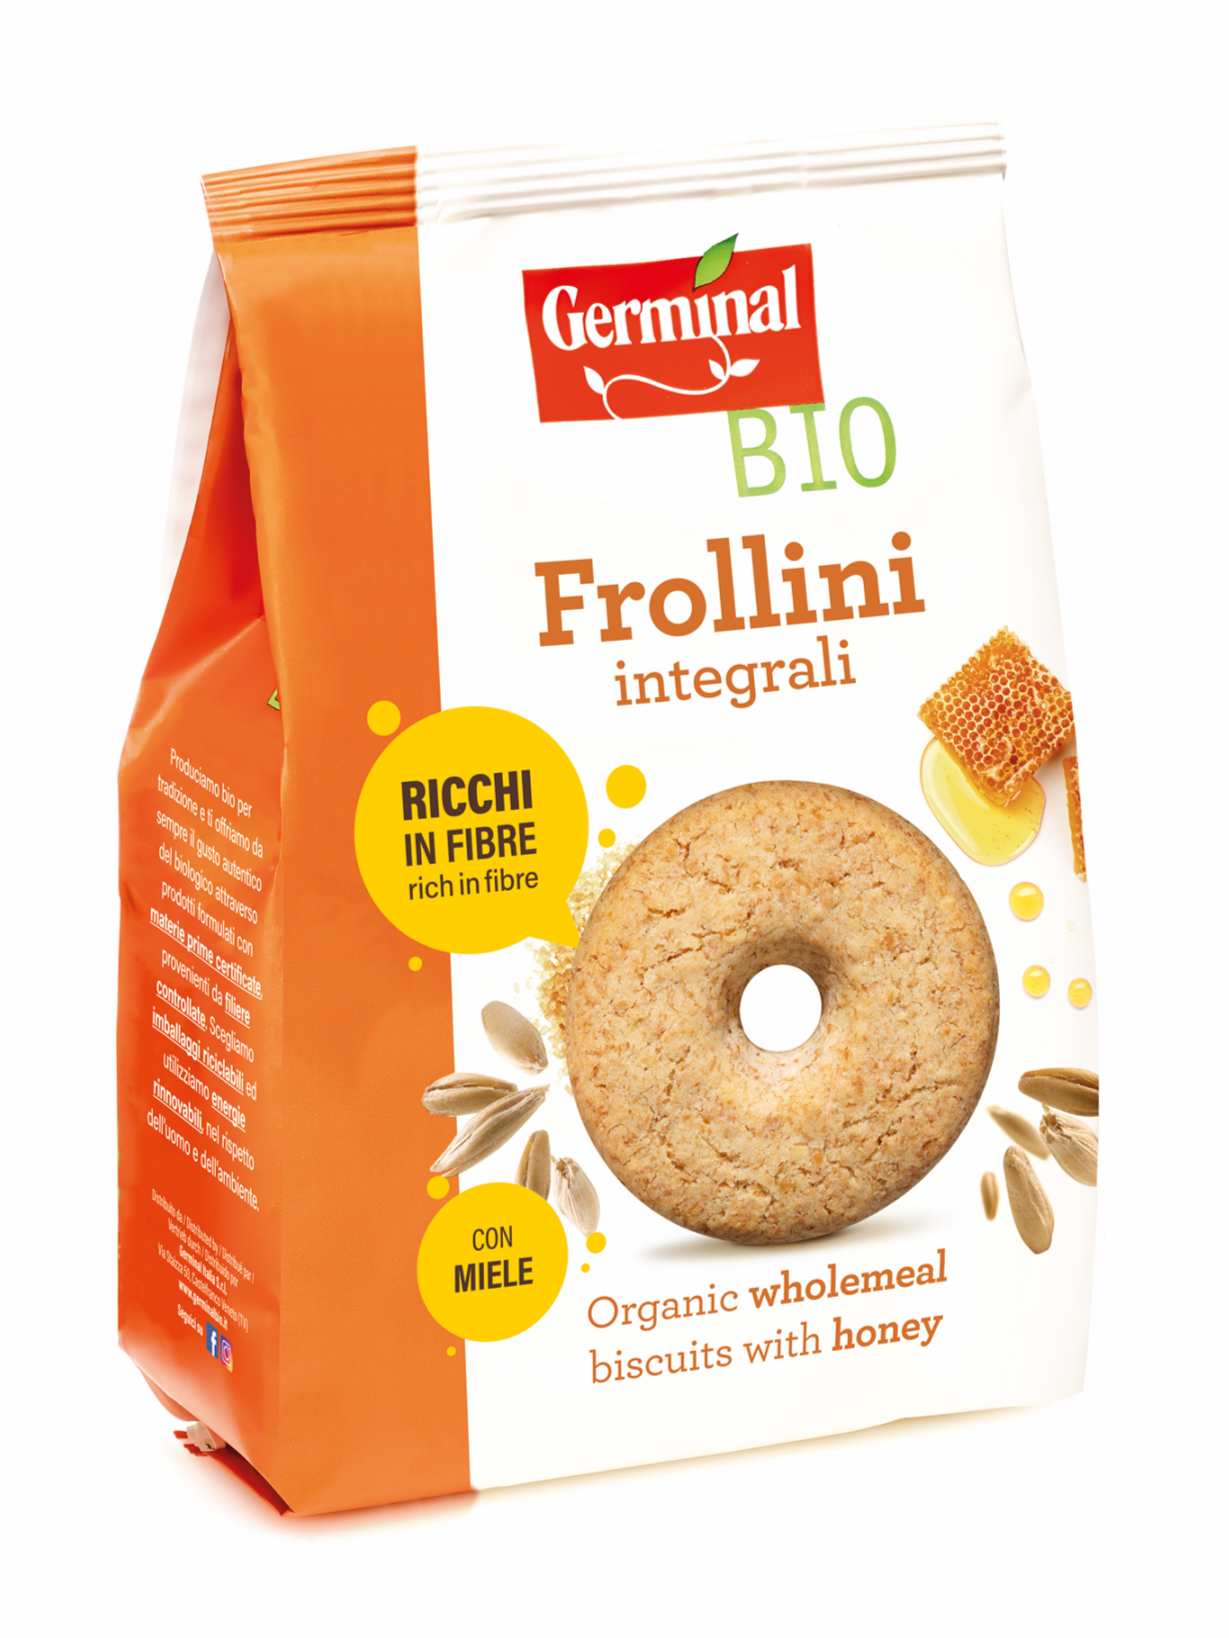 Immagine confezione Frollini Integrali con Miele Germinal Bio